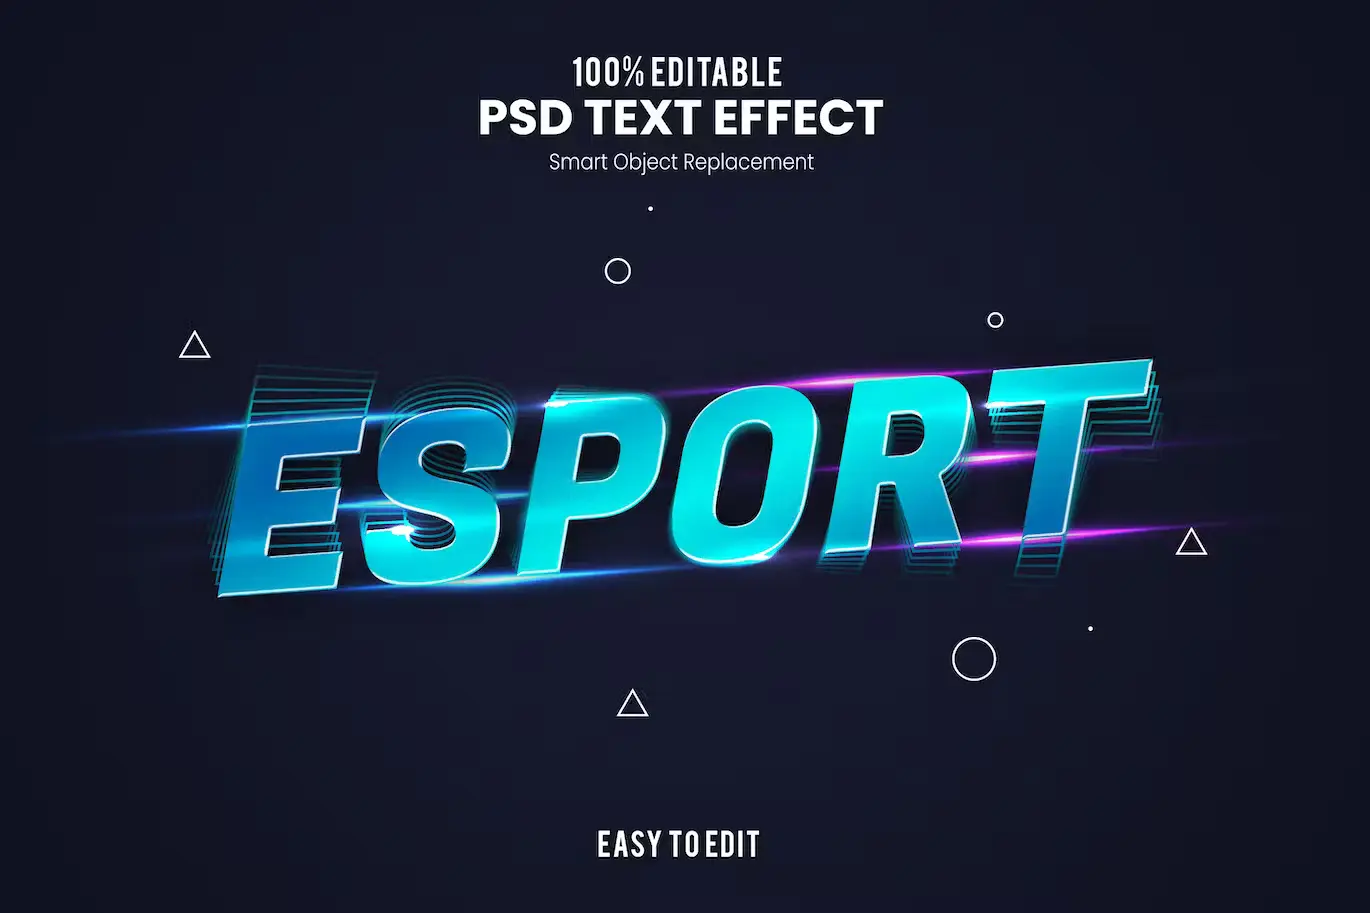 Esport - PSD Text Effect